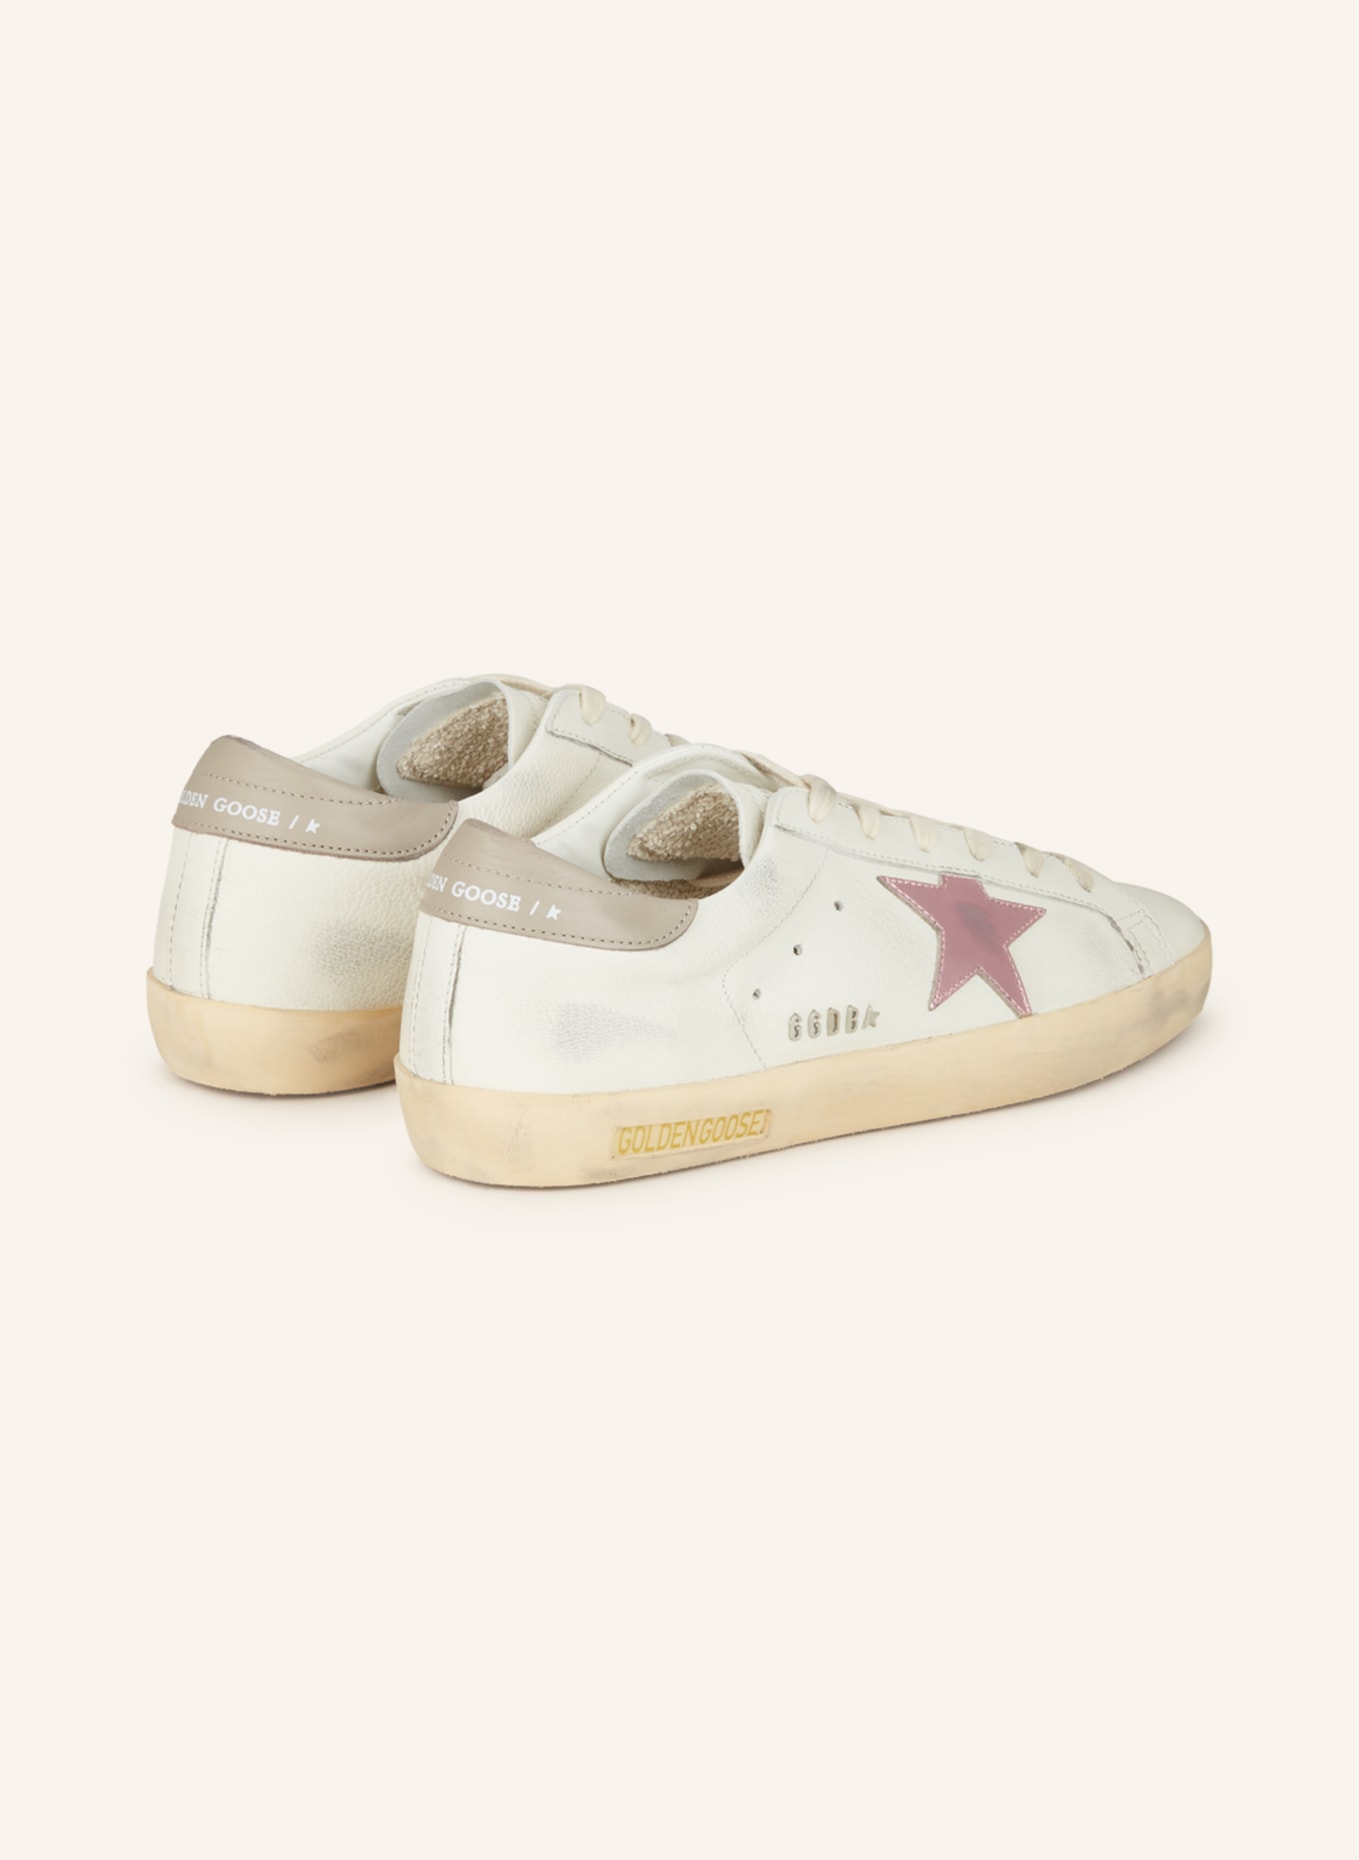 GOLDEN GOOSE Sneaker SUPER-STAR, Farbe: WEISS/ PINK (Bild 2)